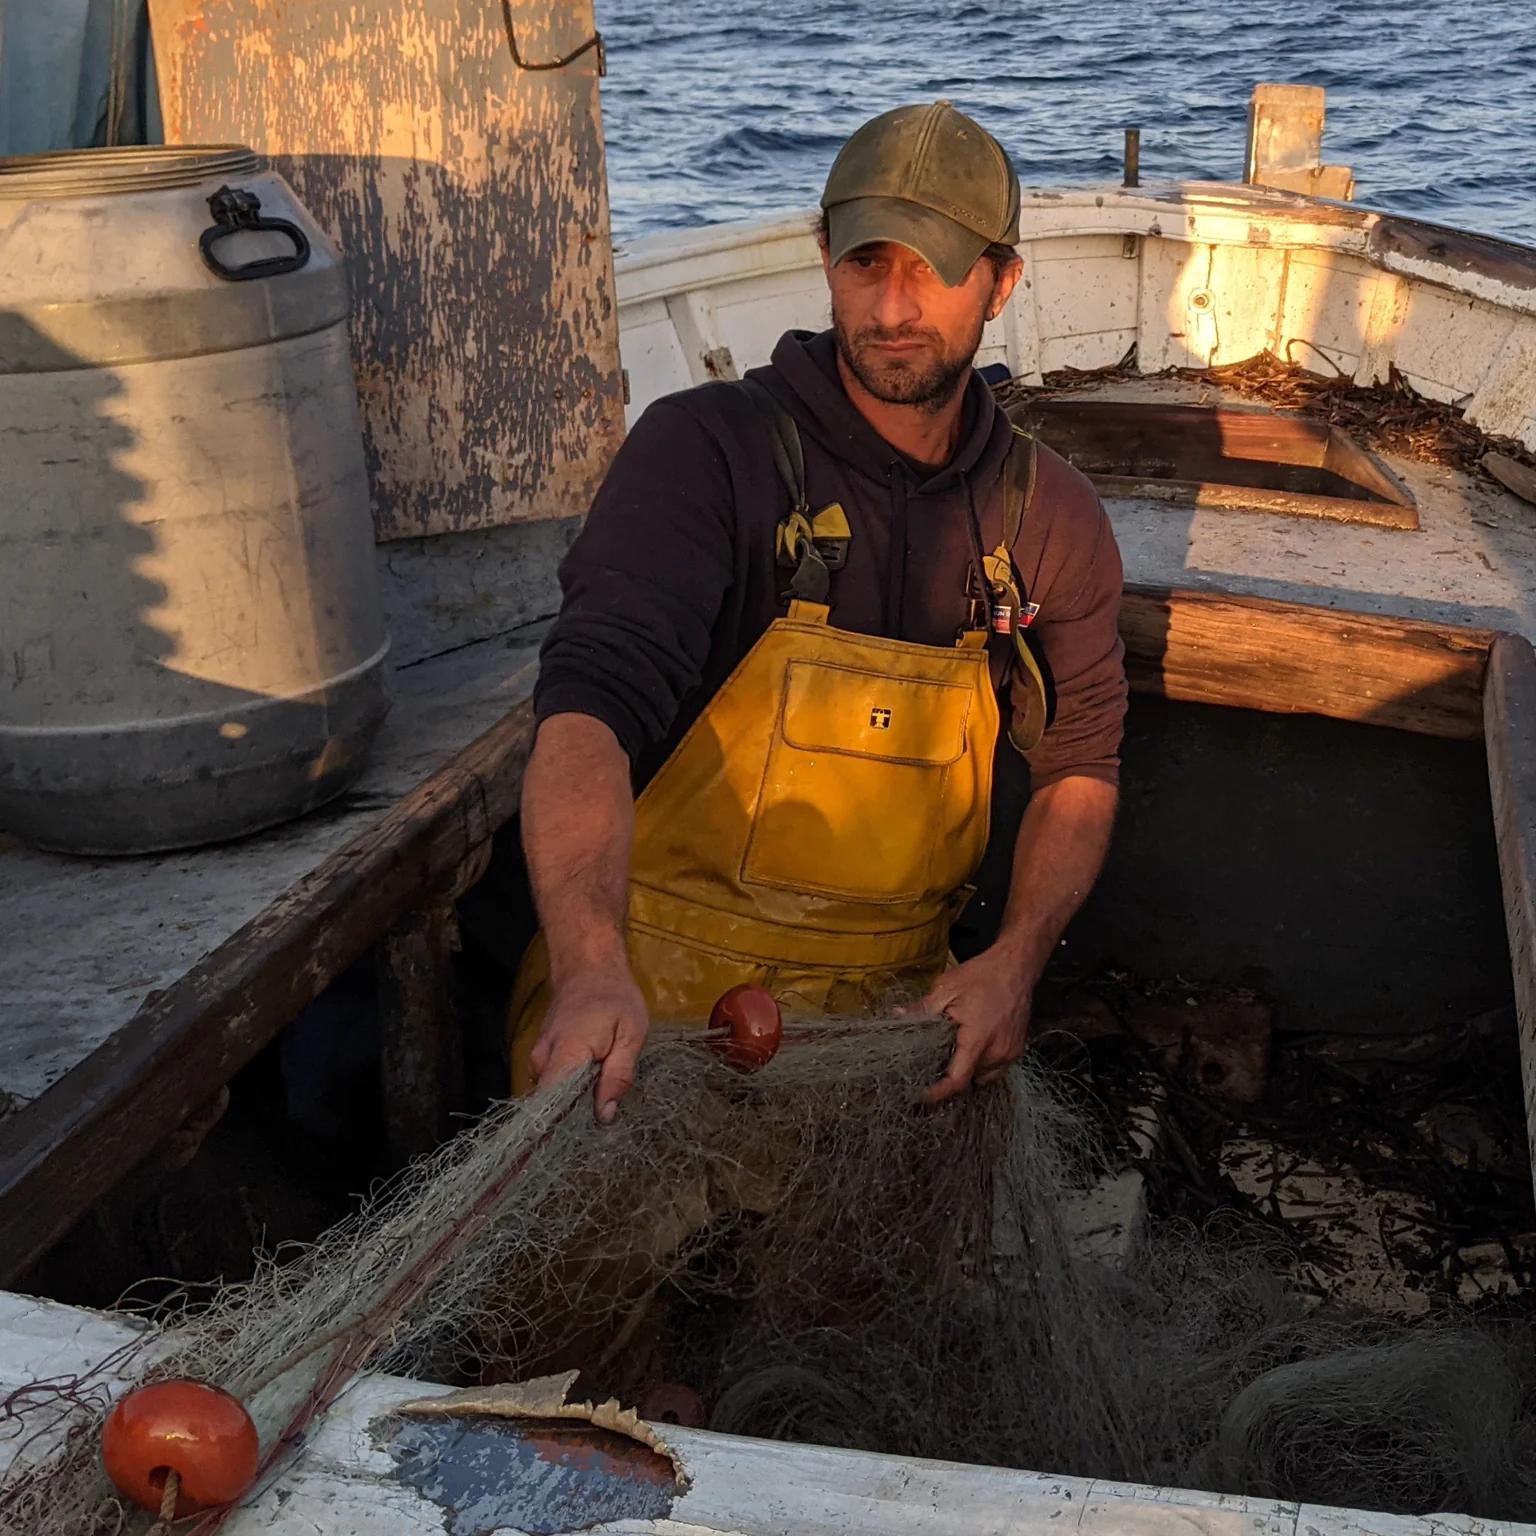 la pêche d'Olivier Ranc se distingue par sa proximité et son impact limité sur l'écosystème.